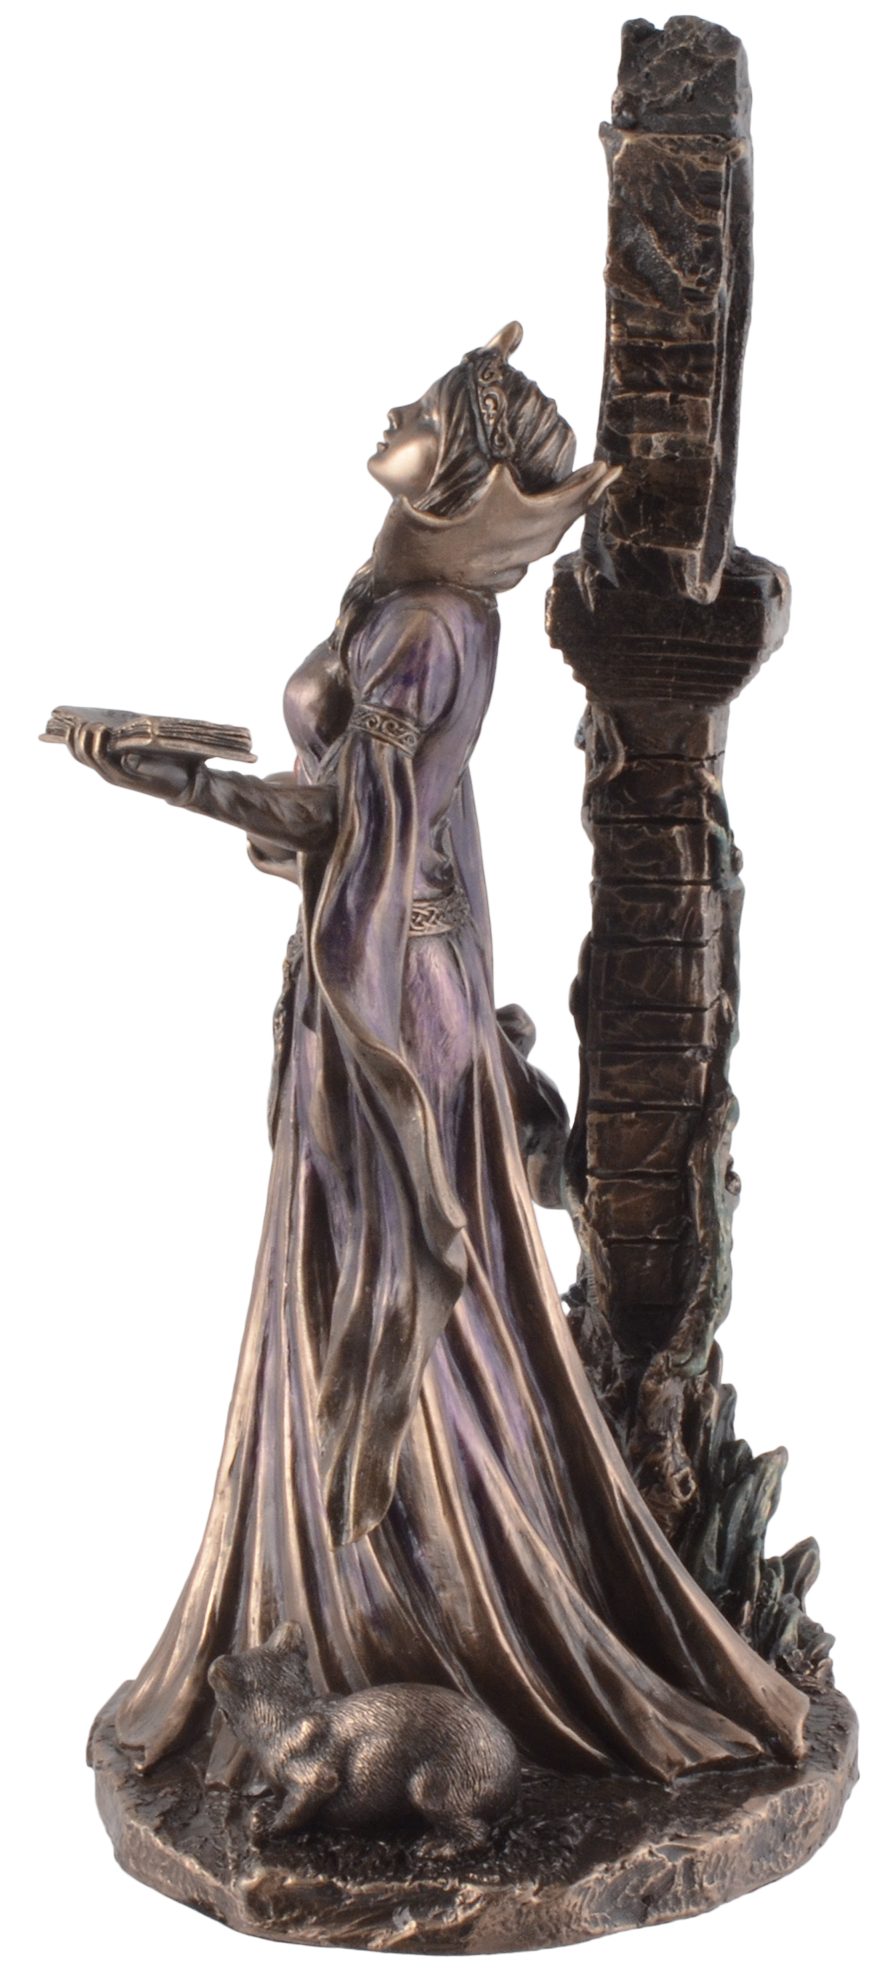 Vogler direct Gmbh Dekofigur Aradia, Details der Hexen Wiccakönigin LxBxH by Veronese, von ca. 16x12x25cm bronziert, Hand wurden 